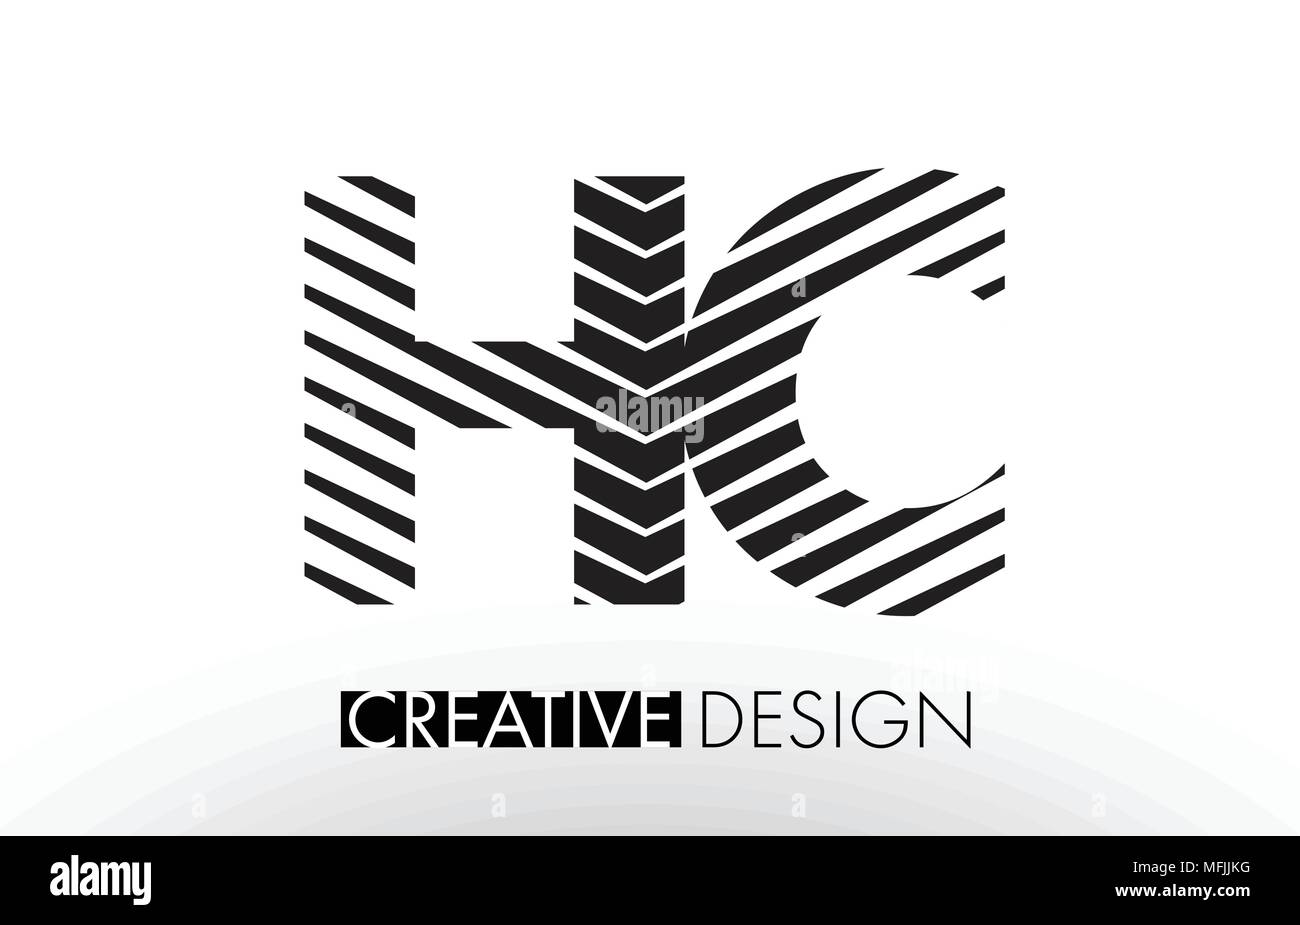 HC H C Zeilen schreiben Design mit Kreativen elegante Zebra Vector Illustration. Stock Vektor